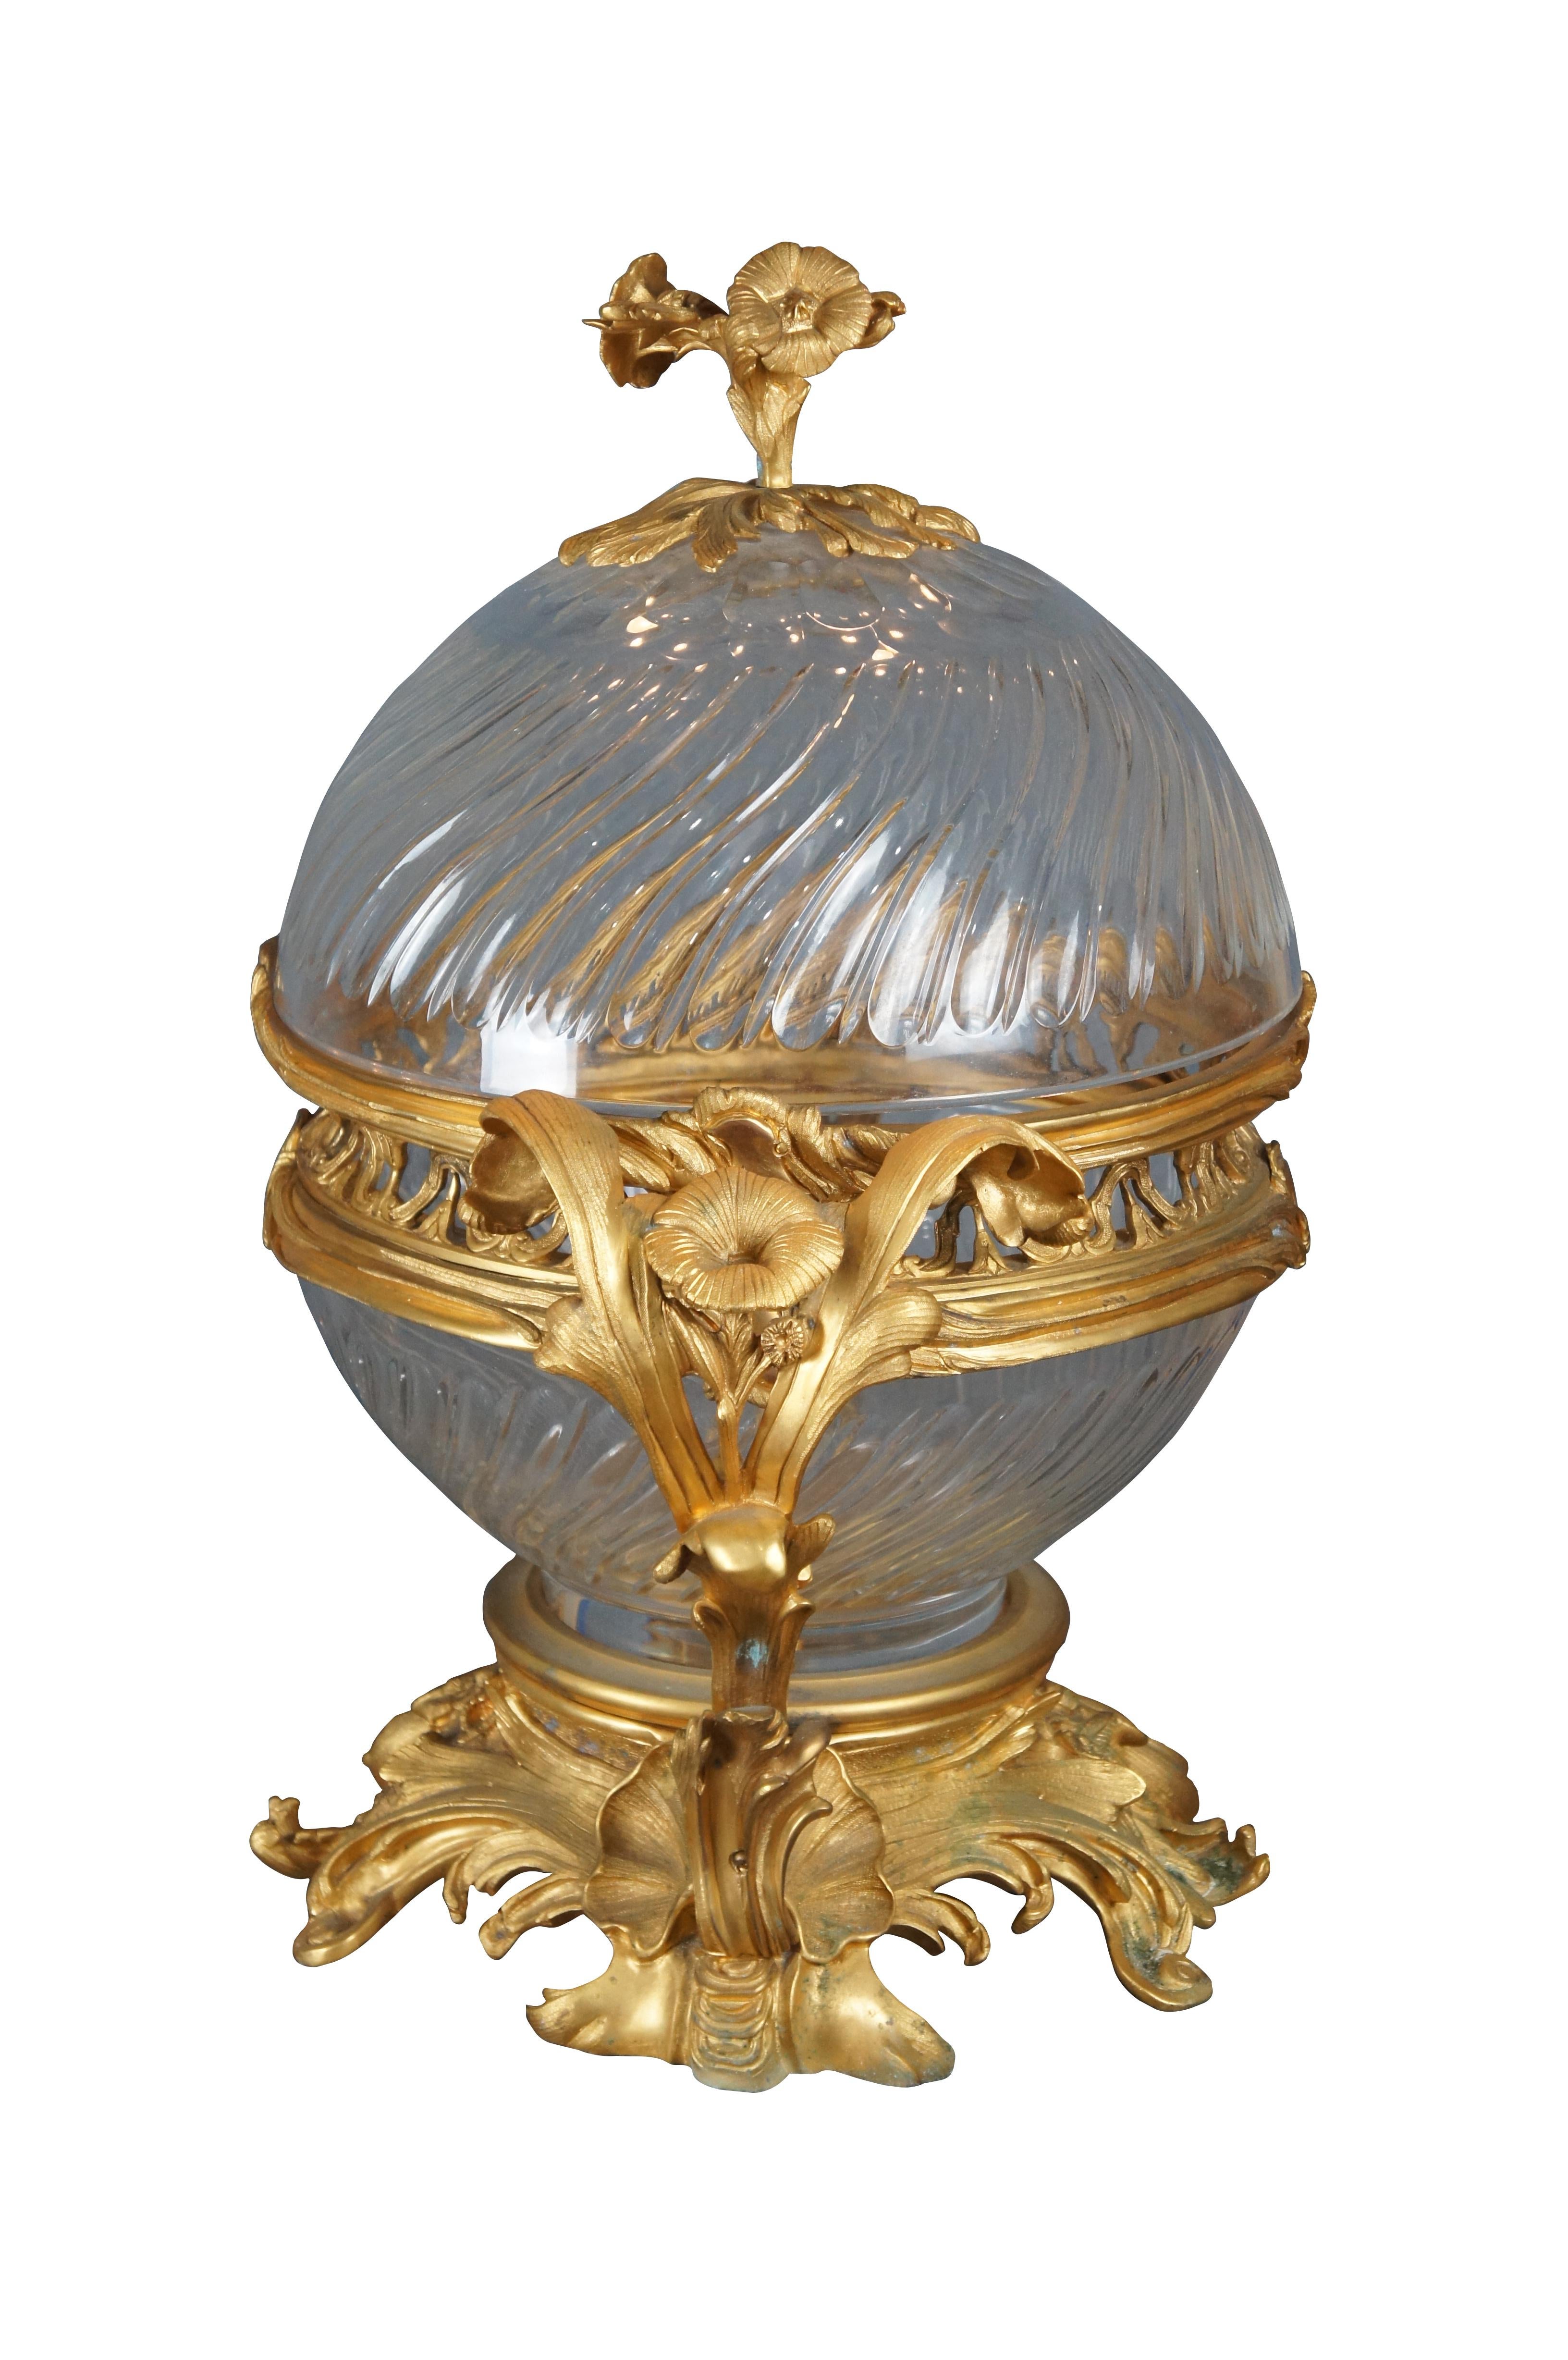 Große und beeindruckende Französisch Louis XV Stil ormolu montiert Kristall Weihrauchbrenner / Tafelaufsatz Schale und Deckel. Mit wunderschön ziselierten Messingbeschlägen aus 24 Karat mit Tulpen- und Akanthusblattendetails. Die Schale ist in der